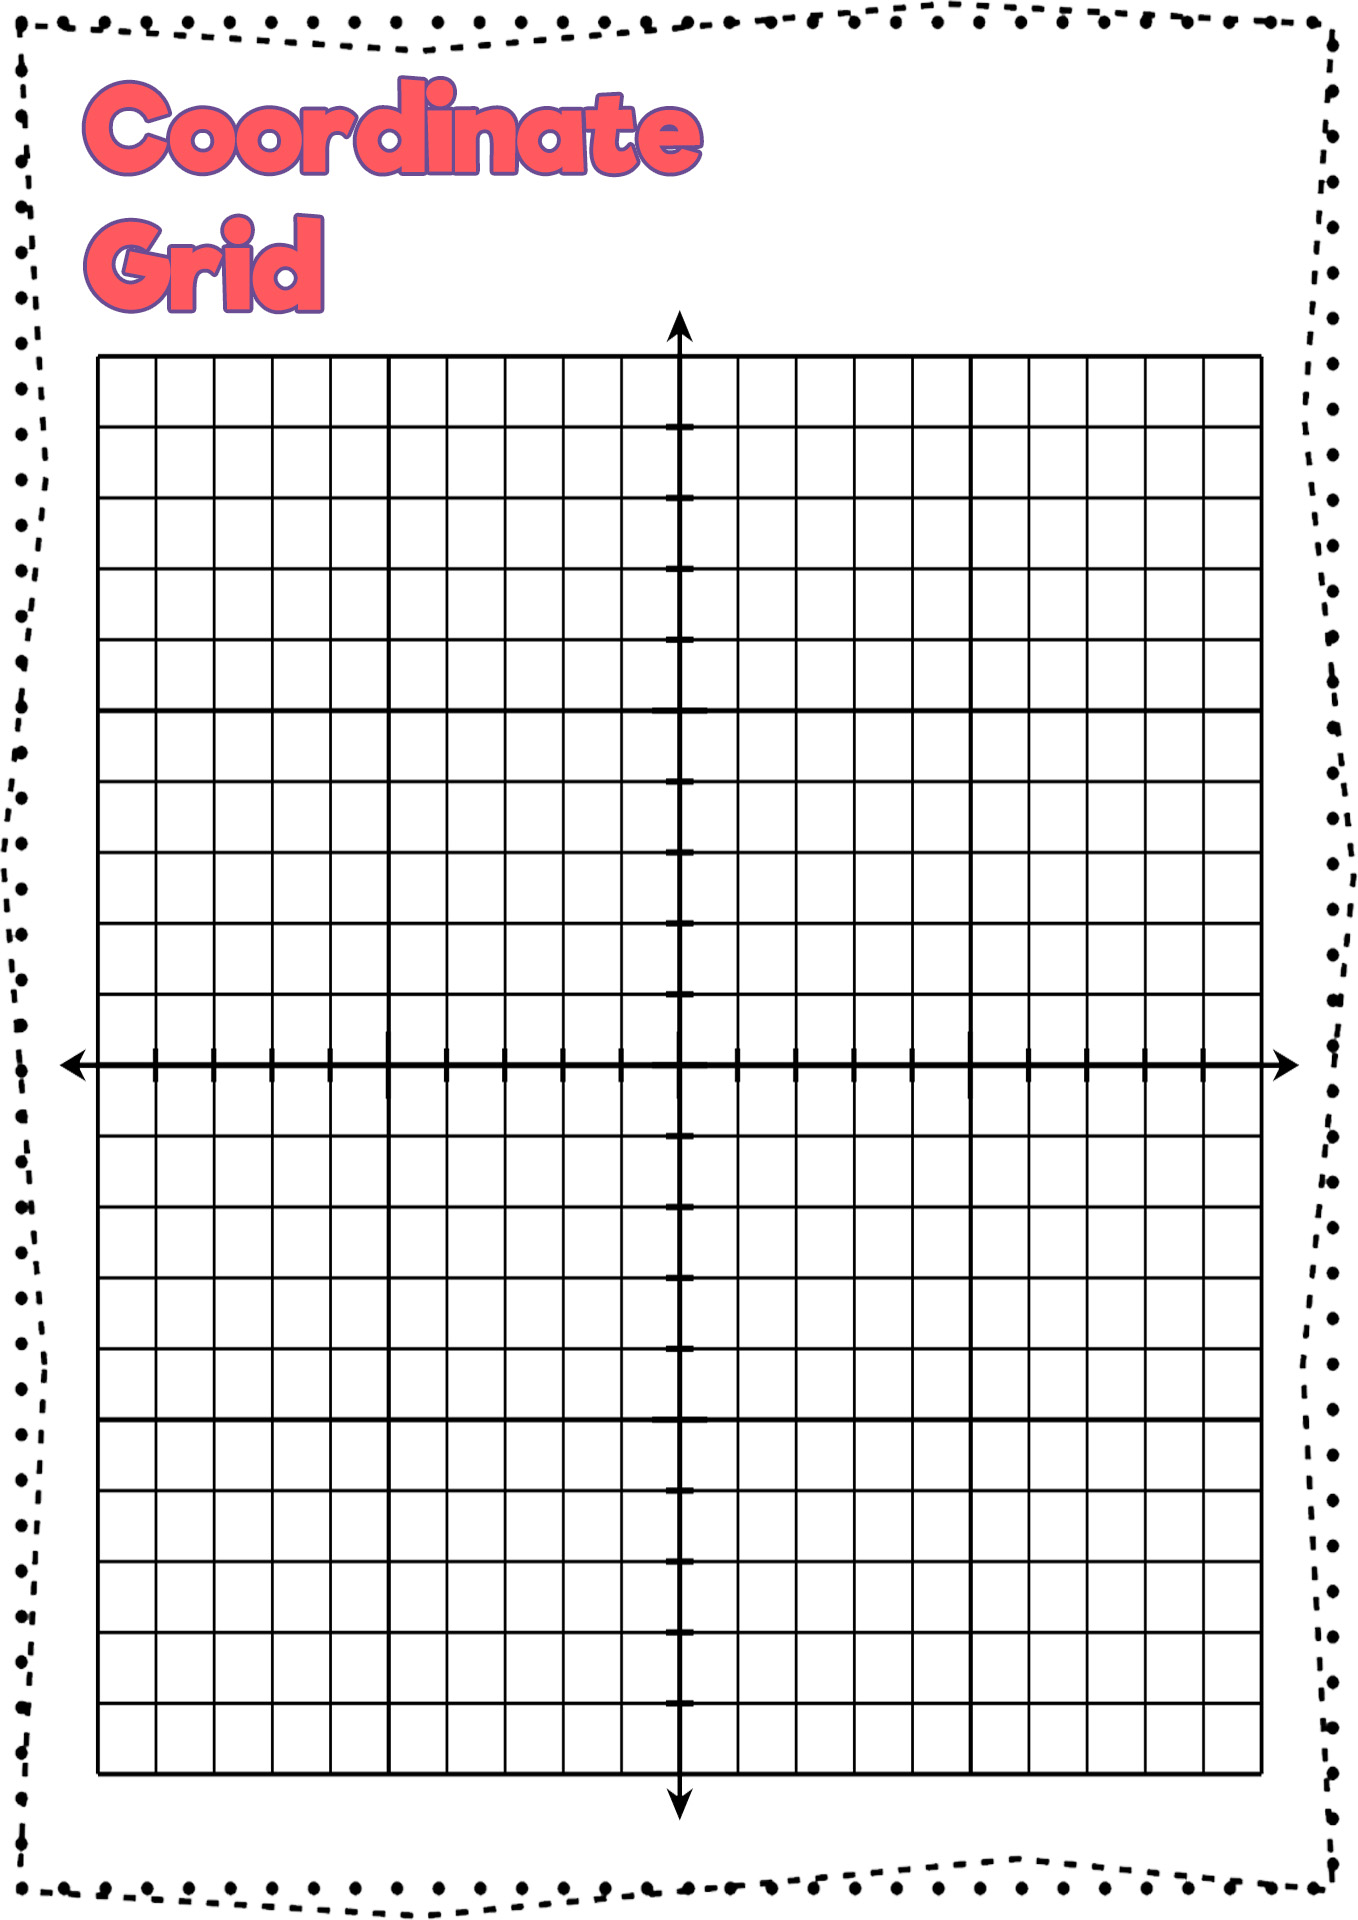 Coordinate Grid Paper Printable Image